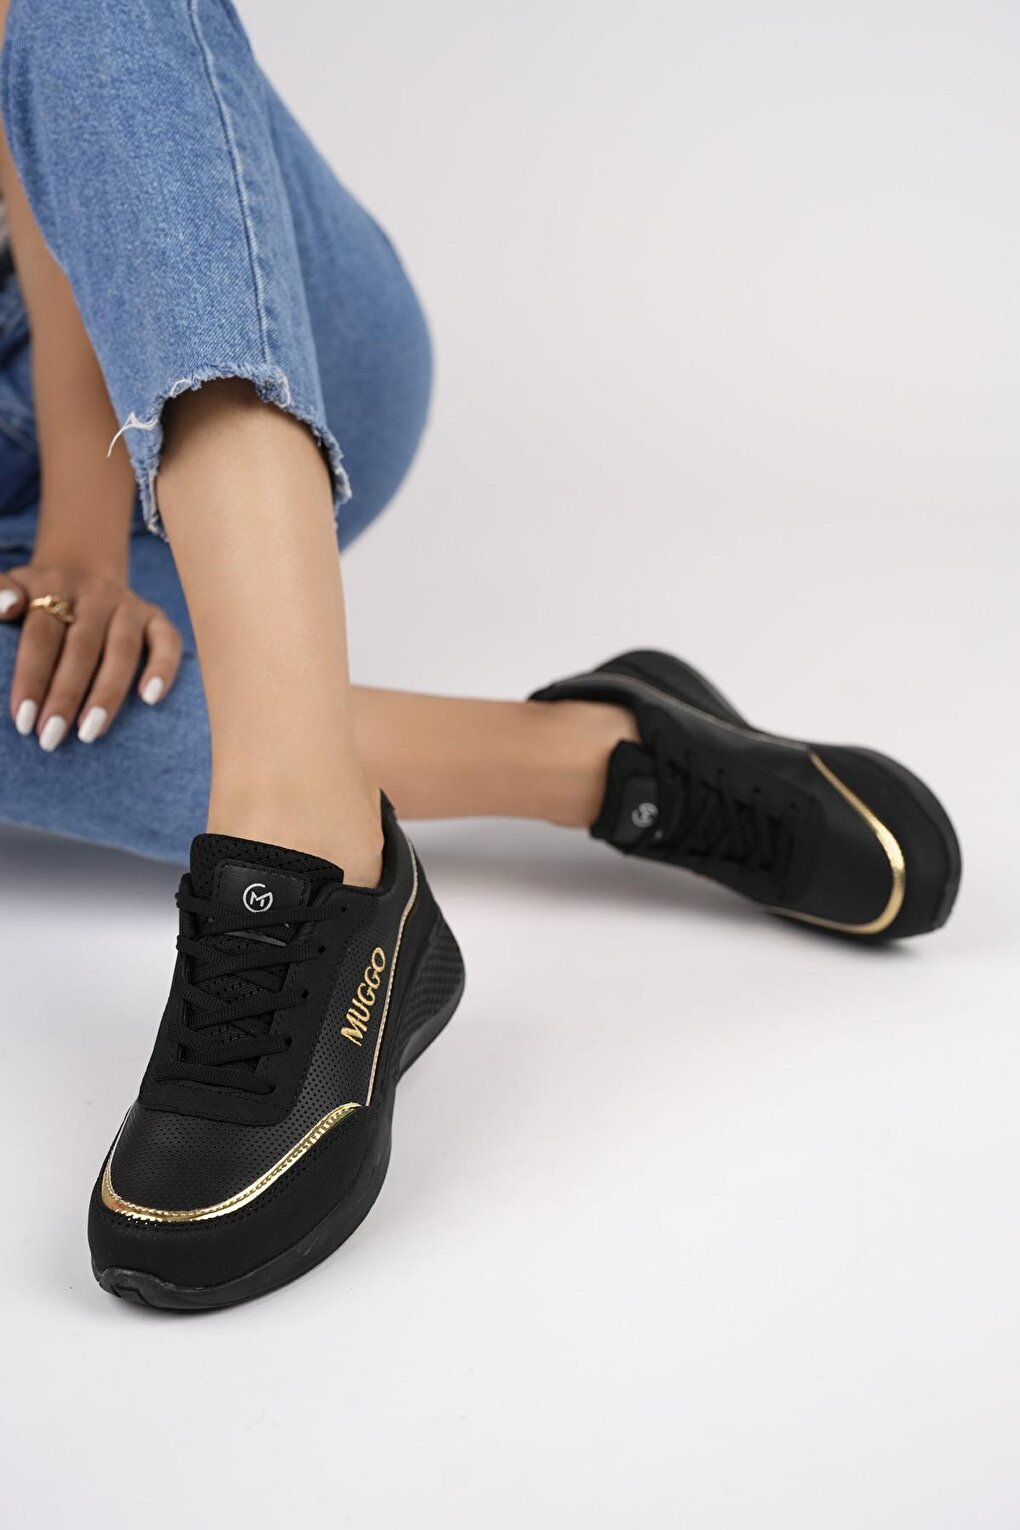 Женские ортопедические повседневные стильные удобные кроссовки на шнуровке Happy, спортивная обувь Muggo, черное золото